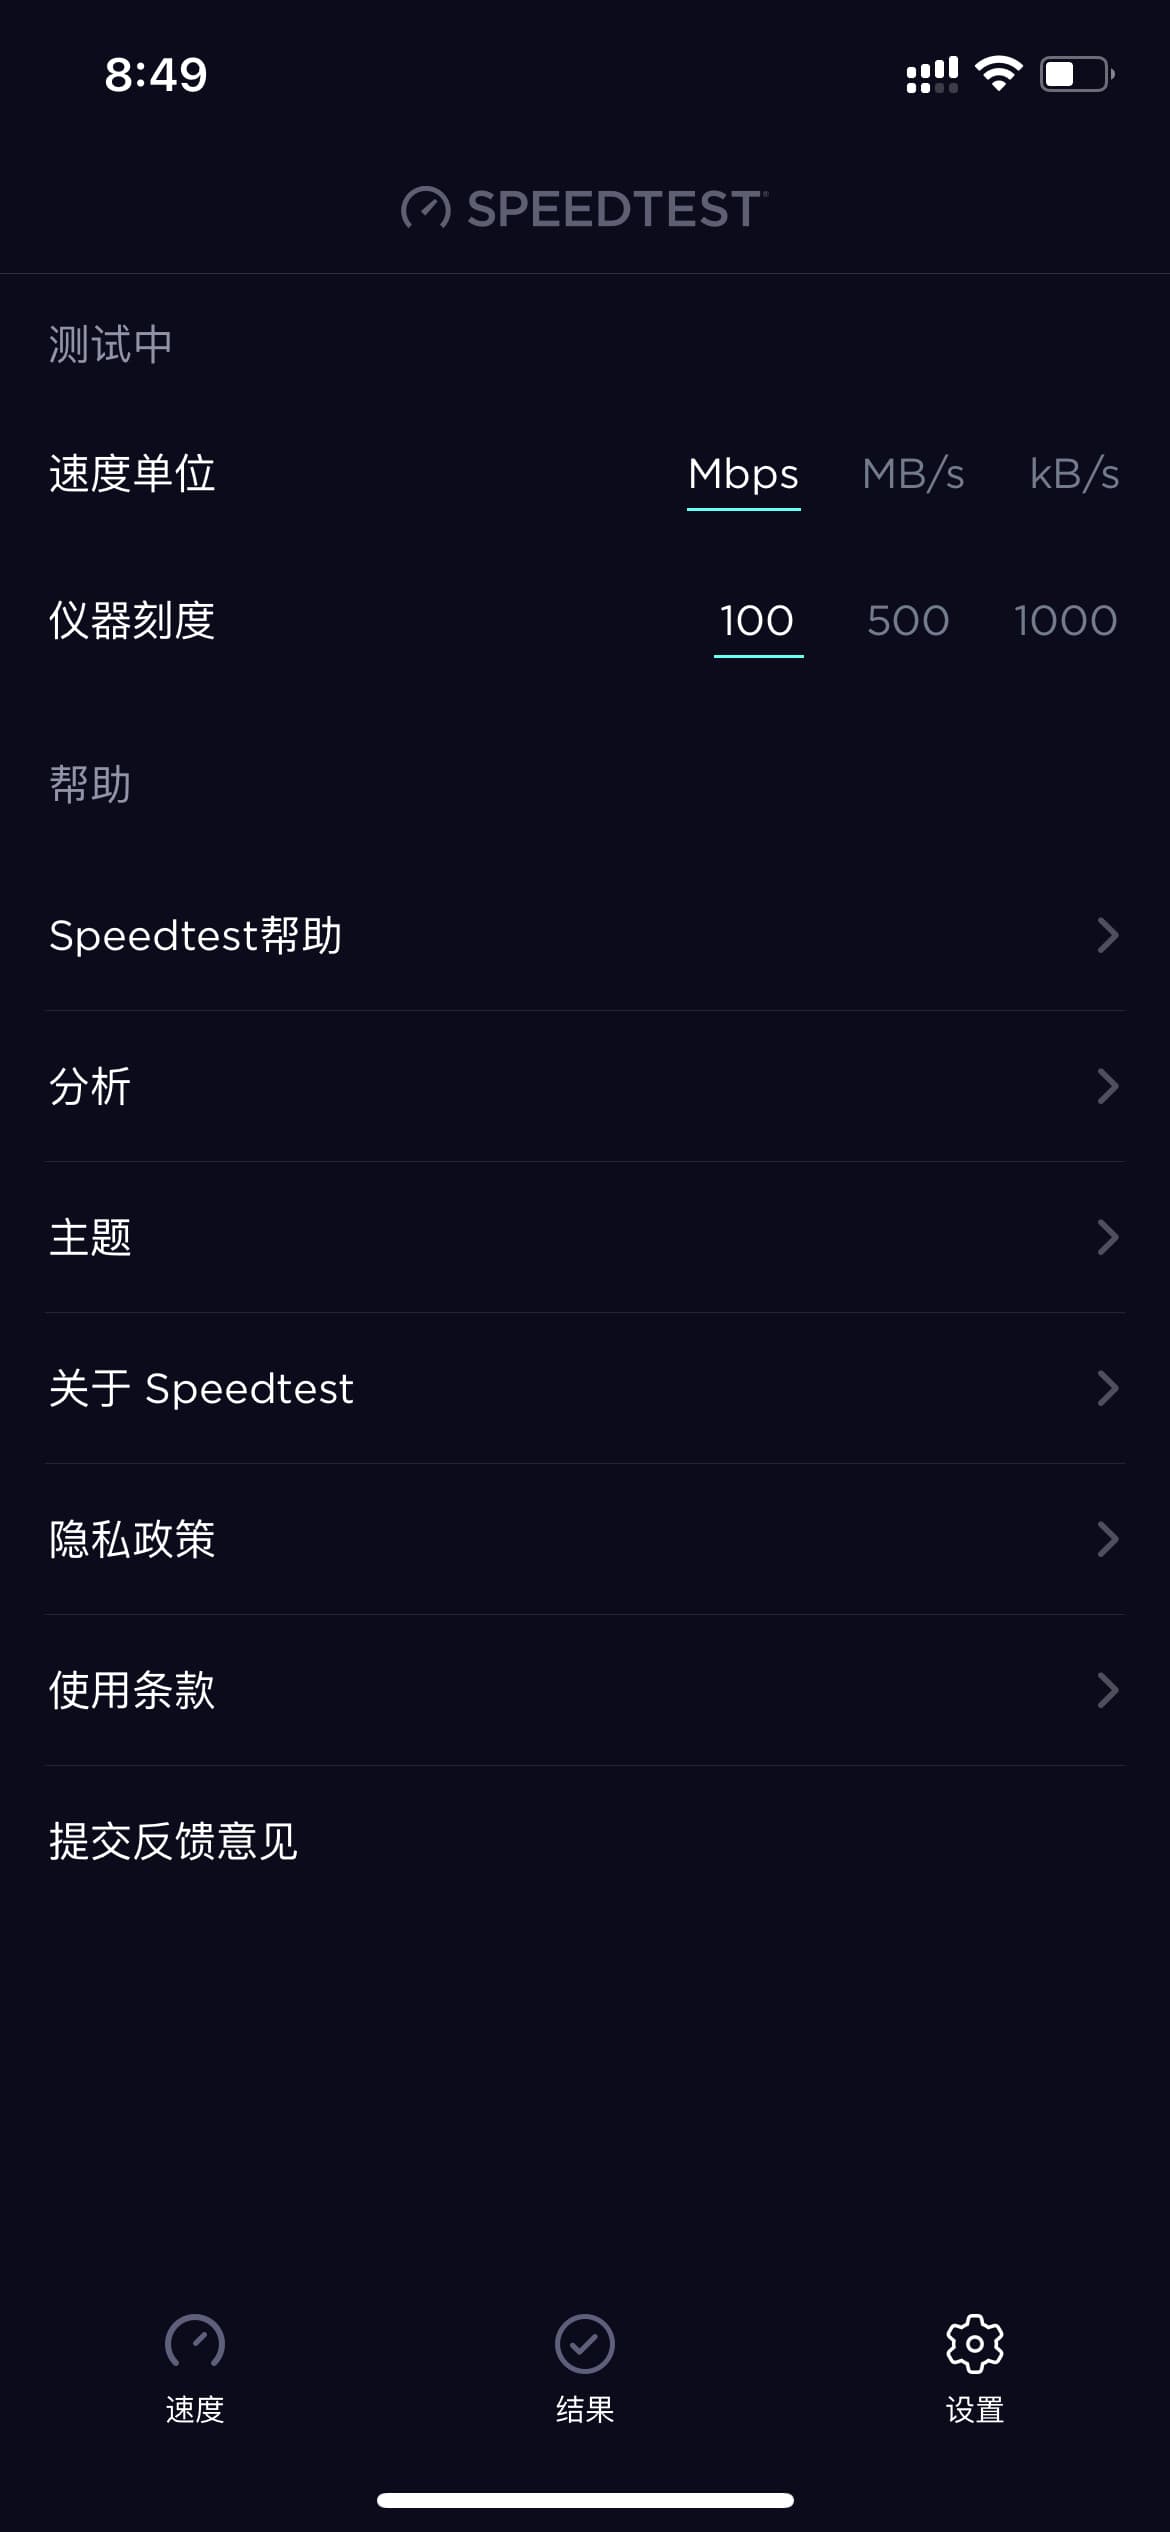 Speedtest 特供版设置页面